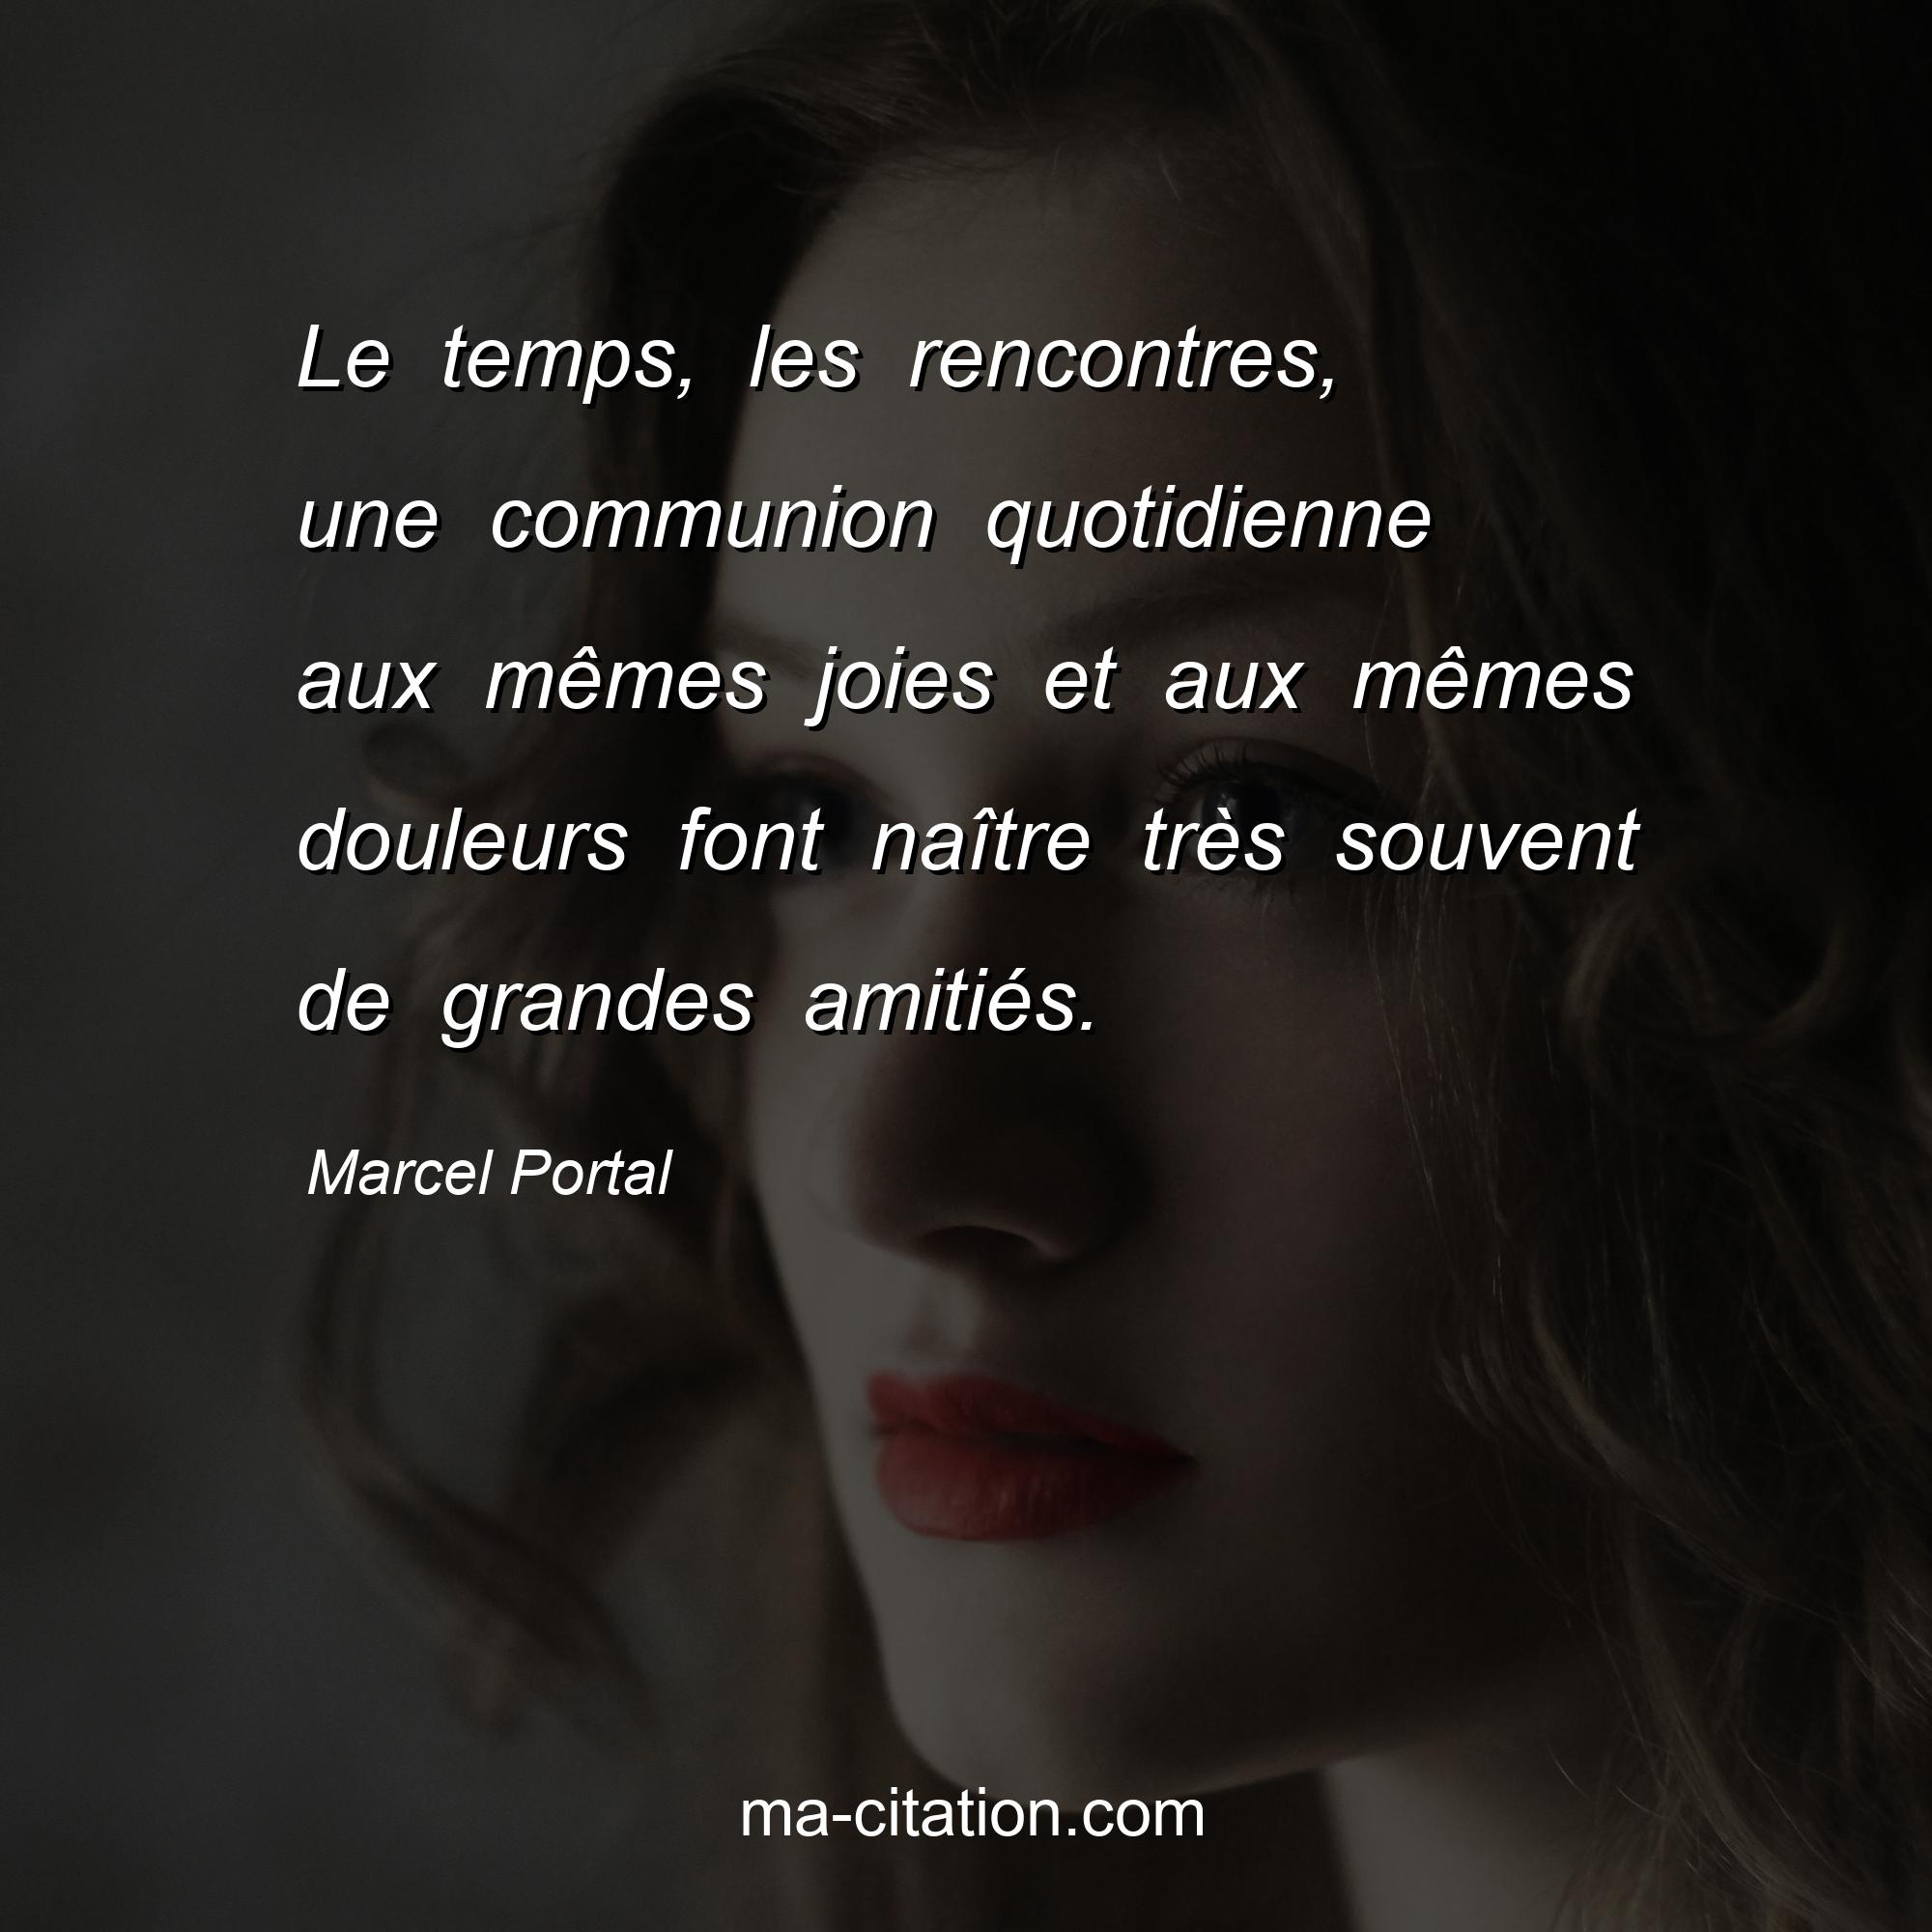 Marcel Portal : Le temps, les rencontres, une communion quotidienne aux mêmes joies et aux mêmes douleurs font naître très souvent de grandes amitiés.